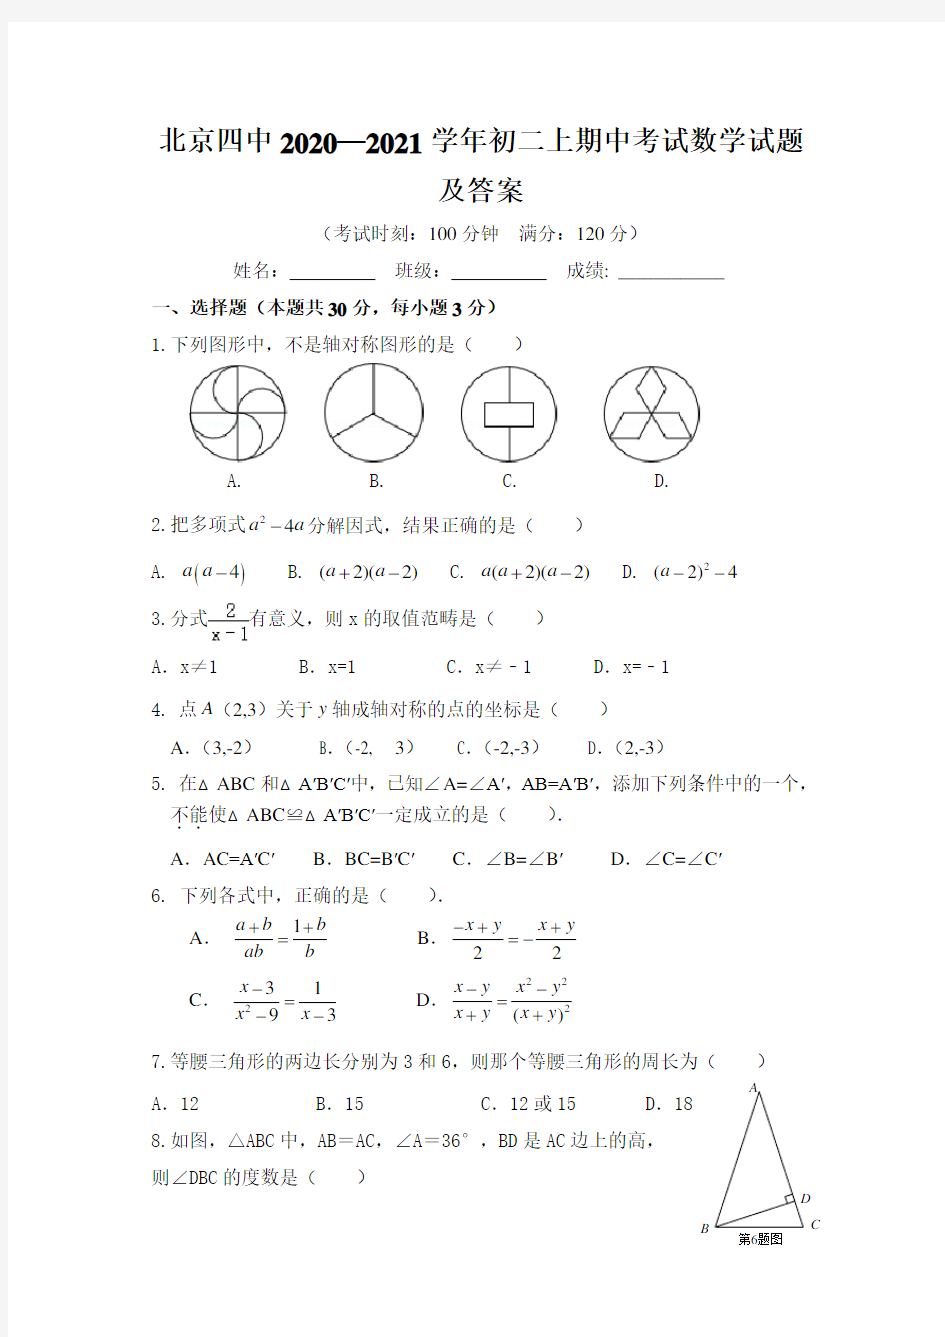 北京四中2020—2021学年初二上期中考试数学试题及答案